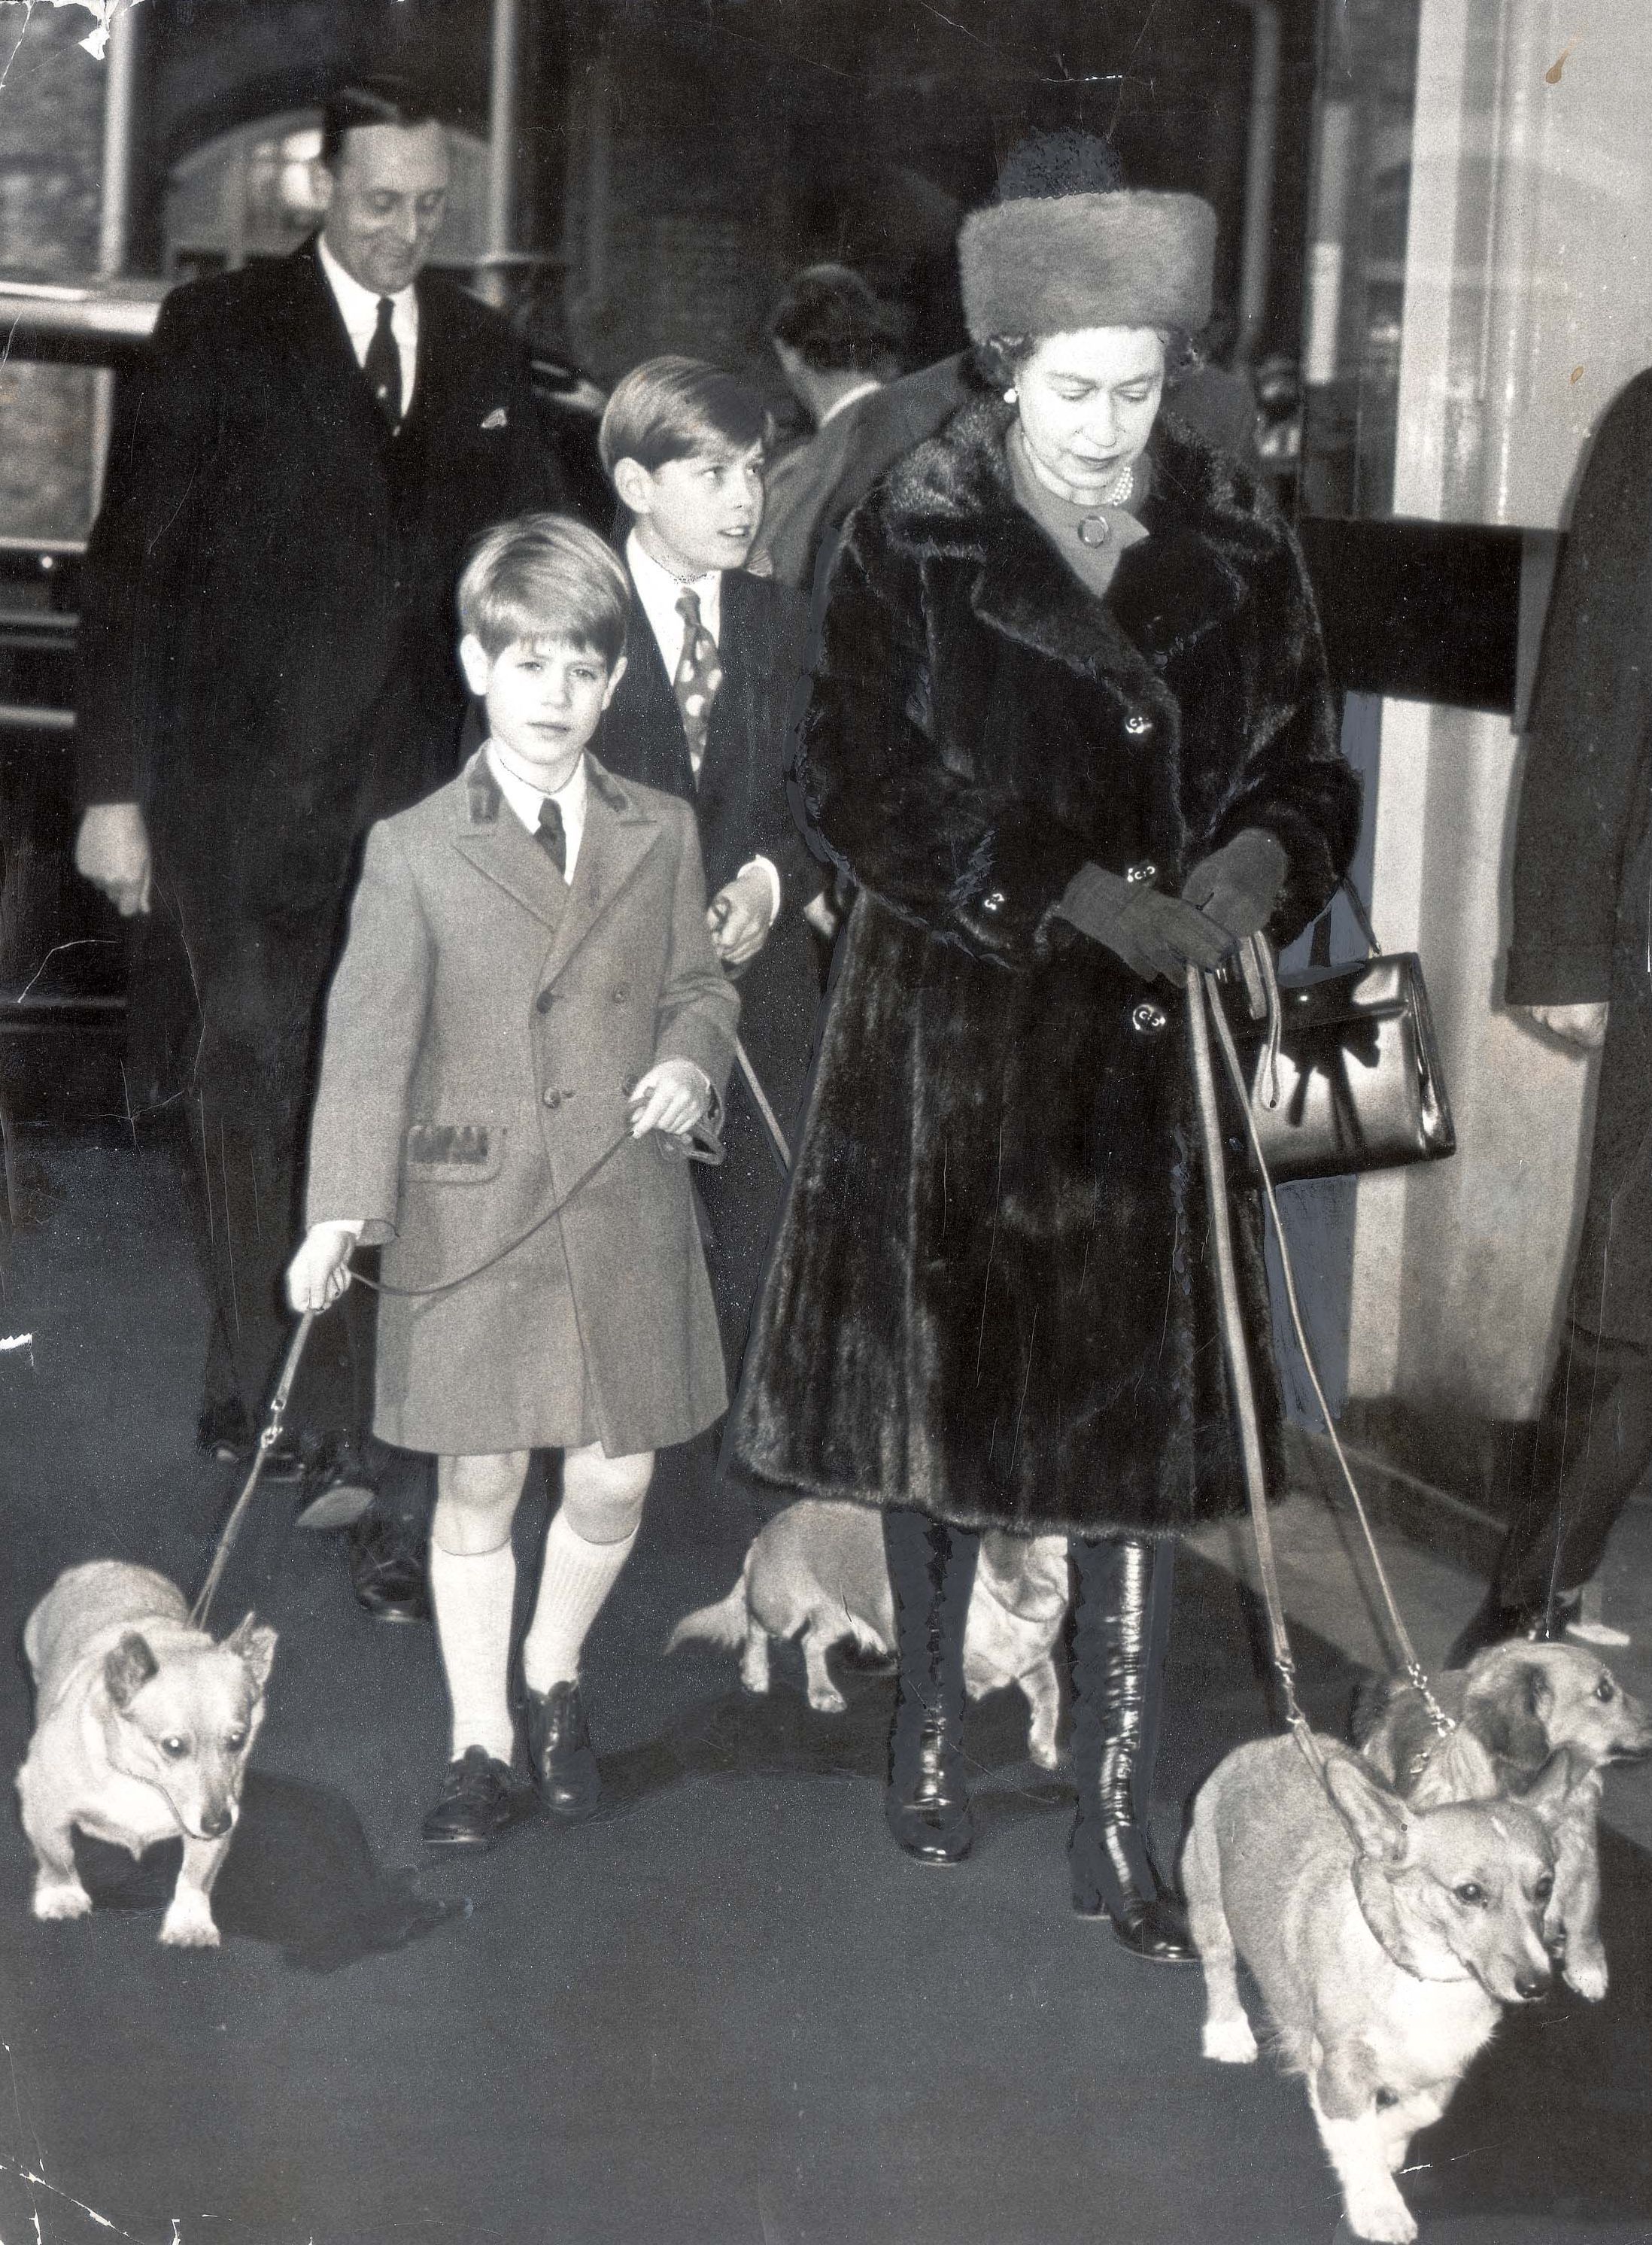 Des photos en noir et blanc des archives le montrent en train de s'occuper des corgis de la reine, alors qu'il était avec sa mère et son frère Andrew à la gare de Liverpool Street en 1971.